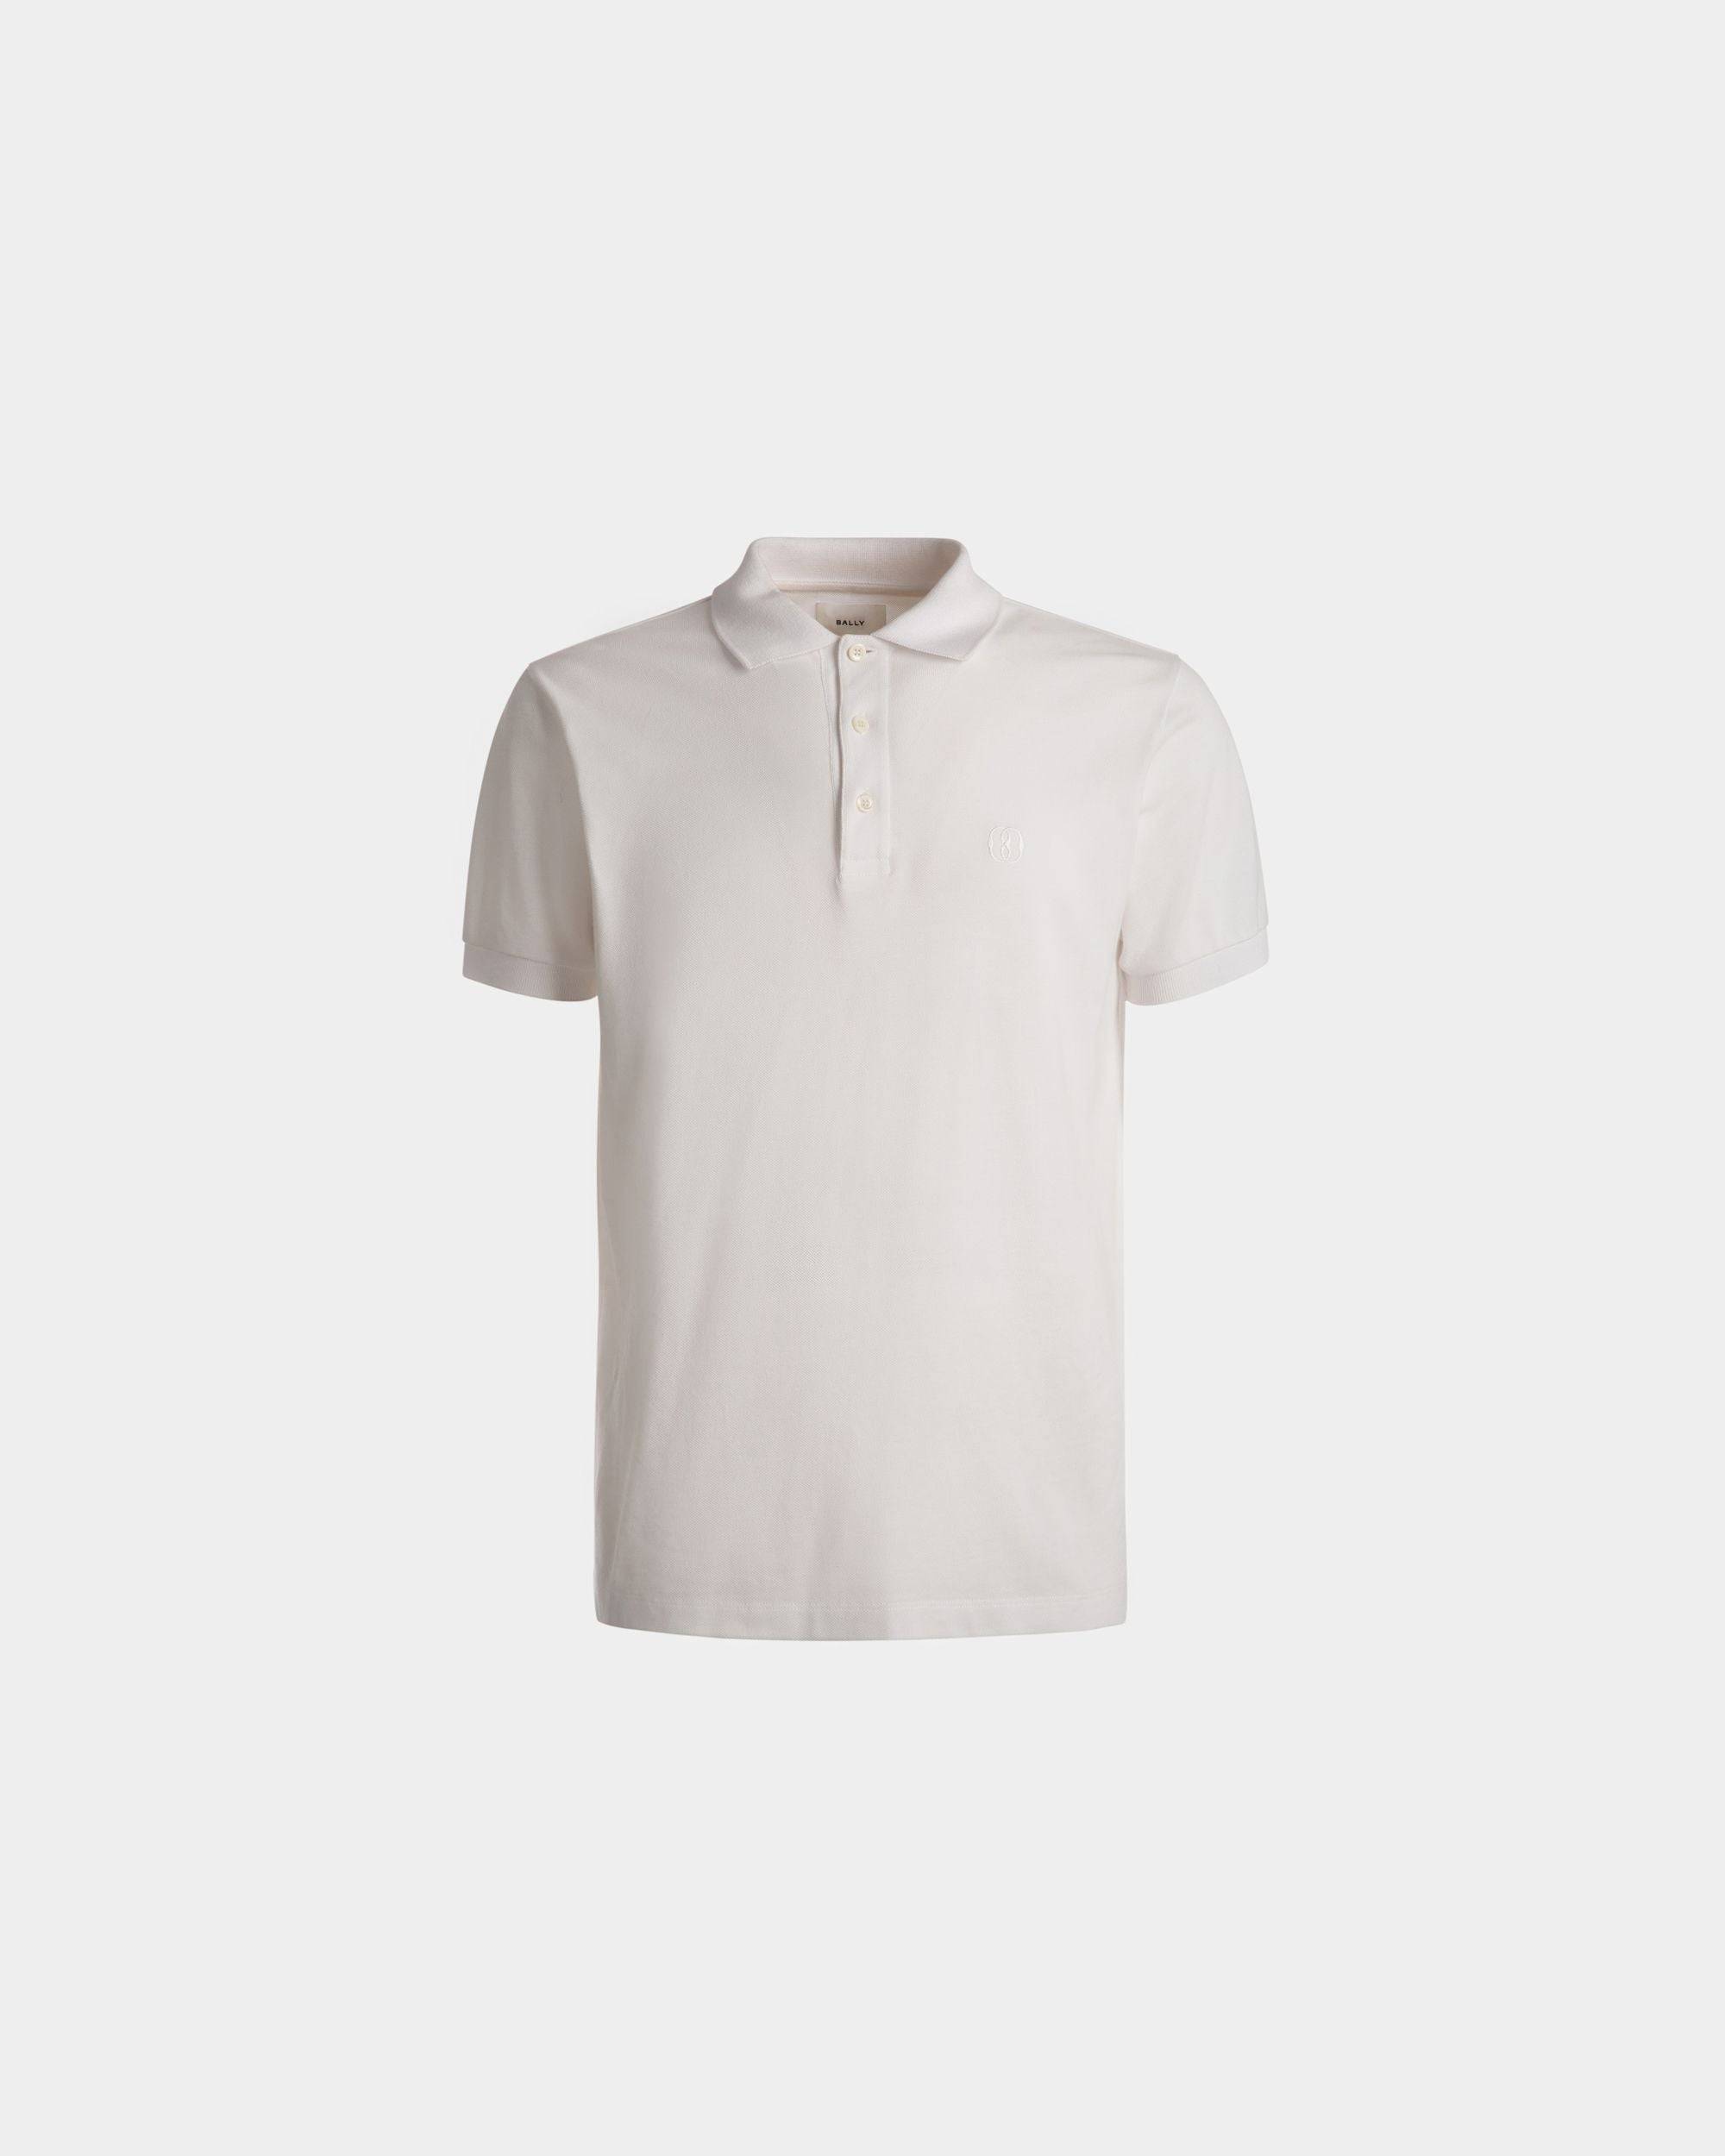 Kurzarm-Poloshirt | Poloshirt für Herren | Weiße Baumwolle | Bally | Still Life Vorderseite